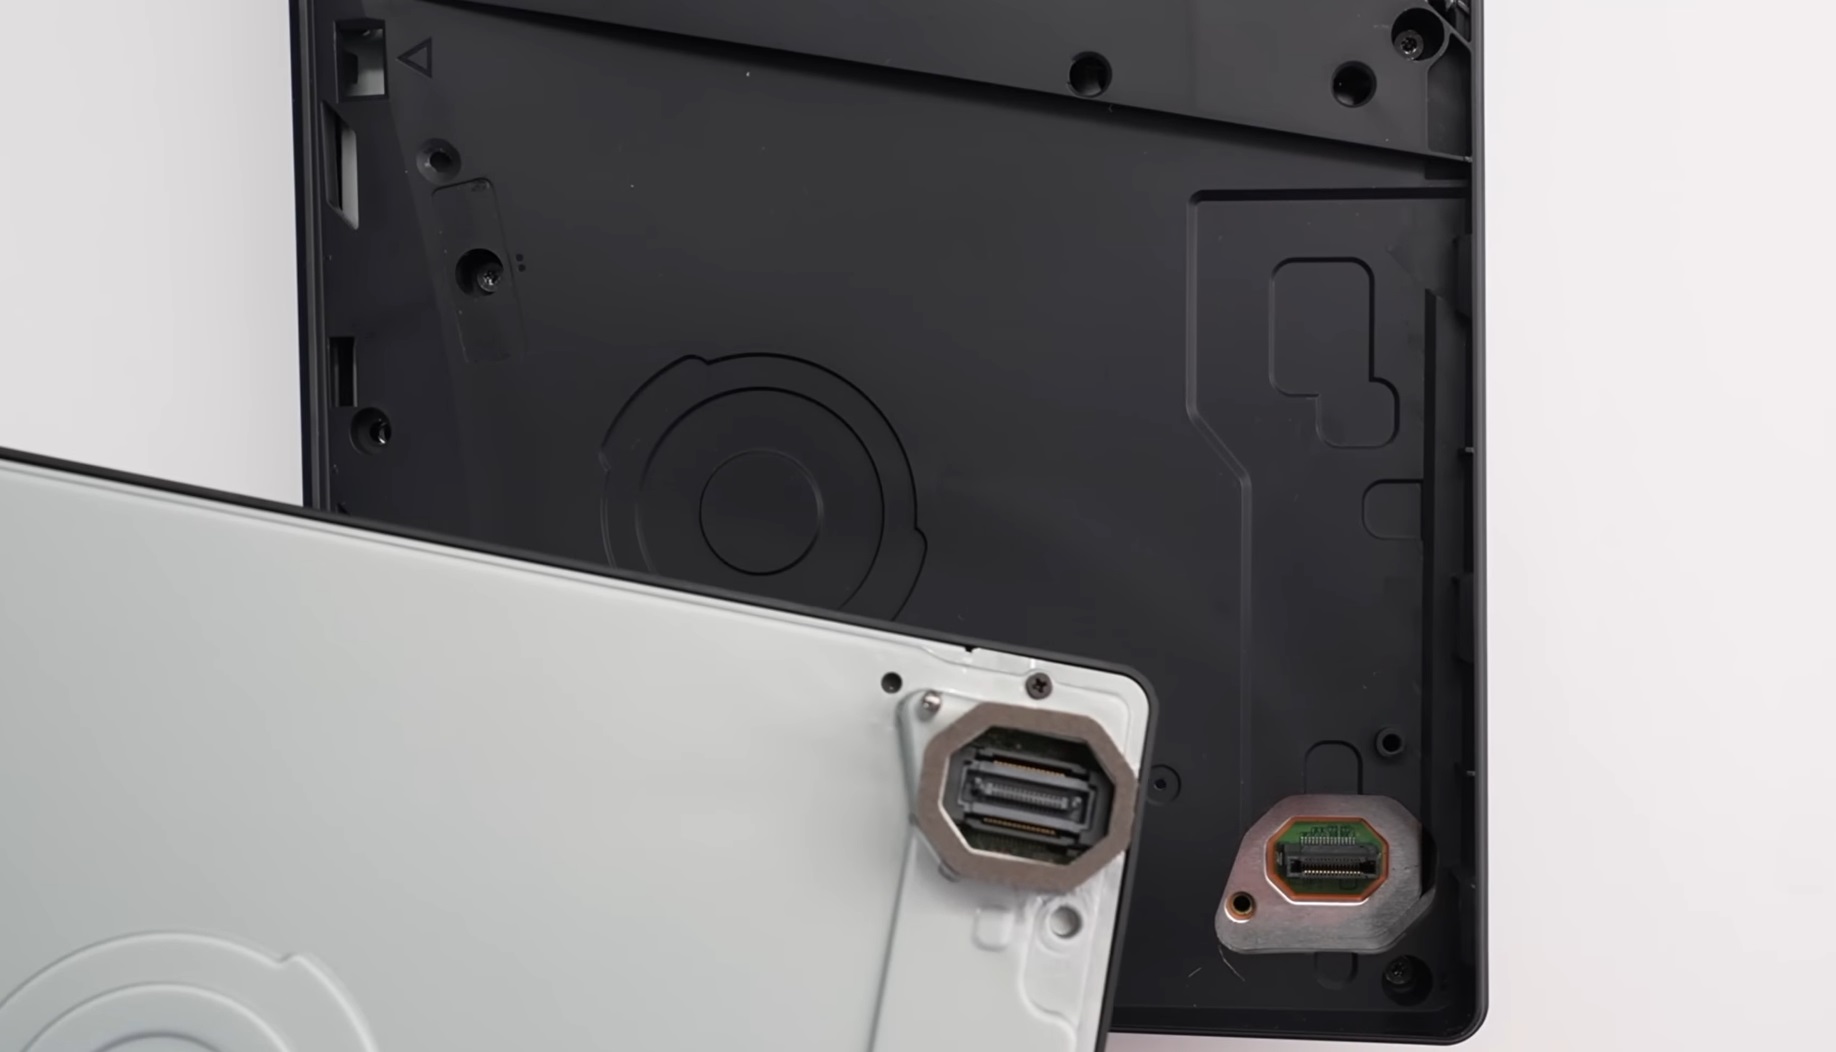 A especulação de preço do PS5 Pro supõe um aumento de 10 a 20% em relação  ao PS5 Slim para um aumento de desempenho de 30 a 50% -   News